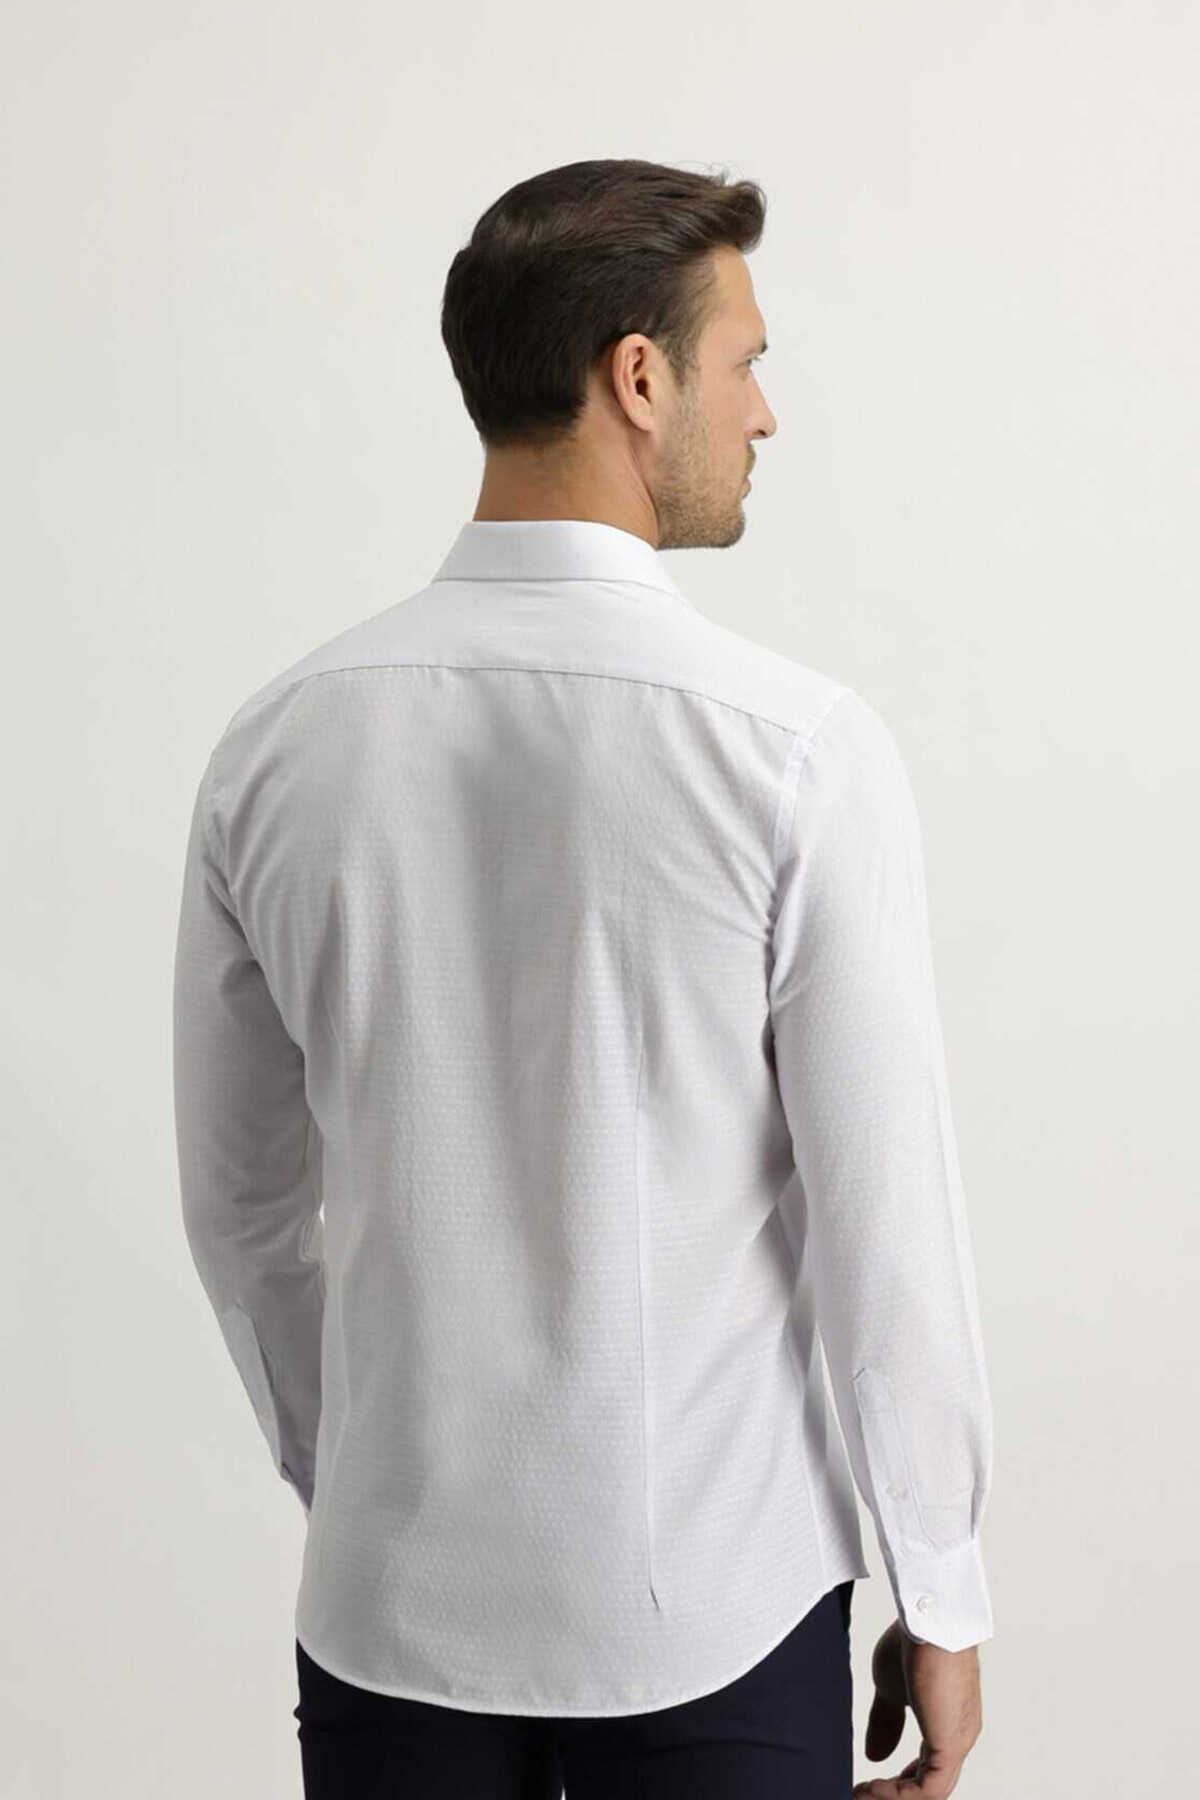 پیراهن کلاسیک آستین بلند طرح دار مردانه سفید برند Kiğılı 